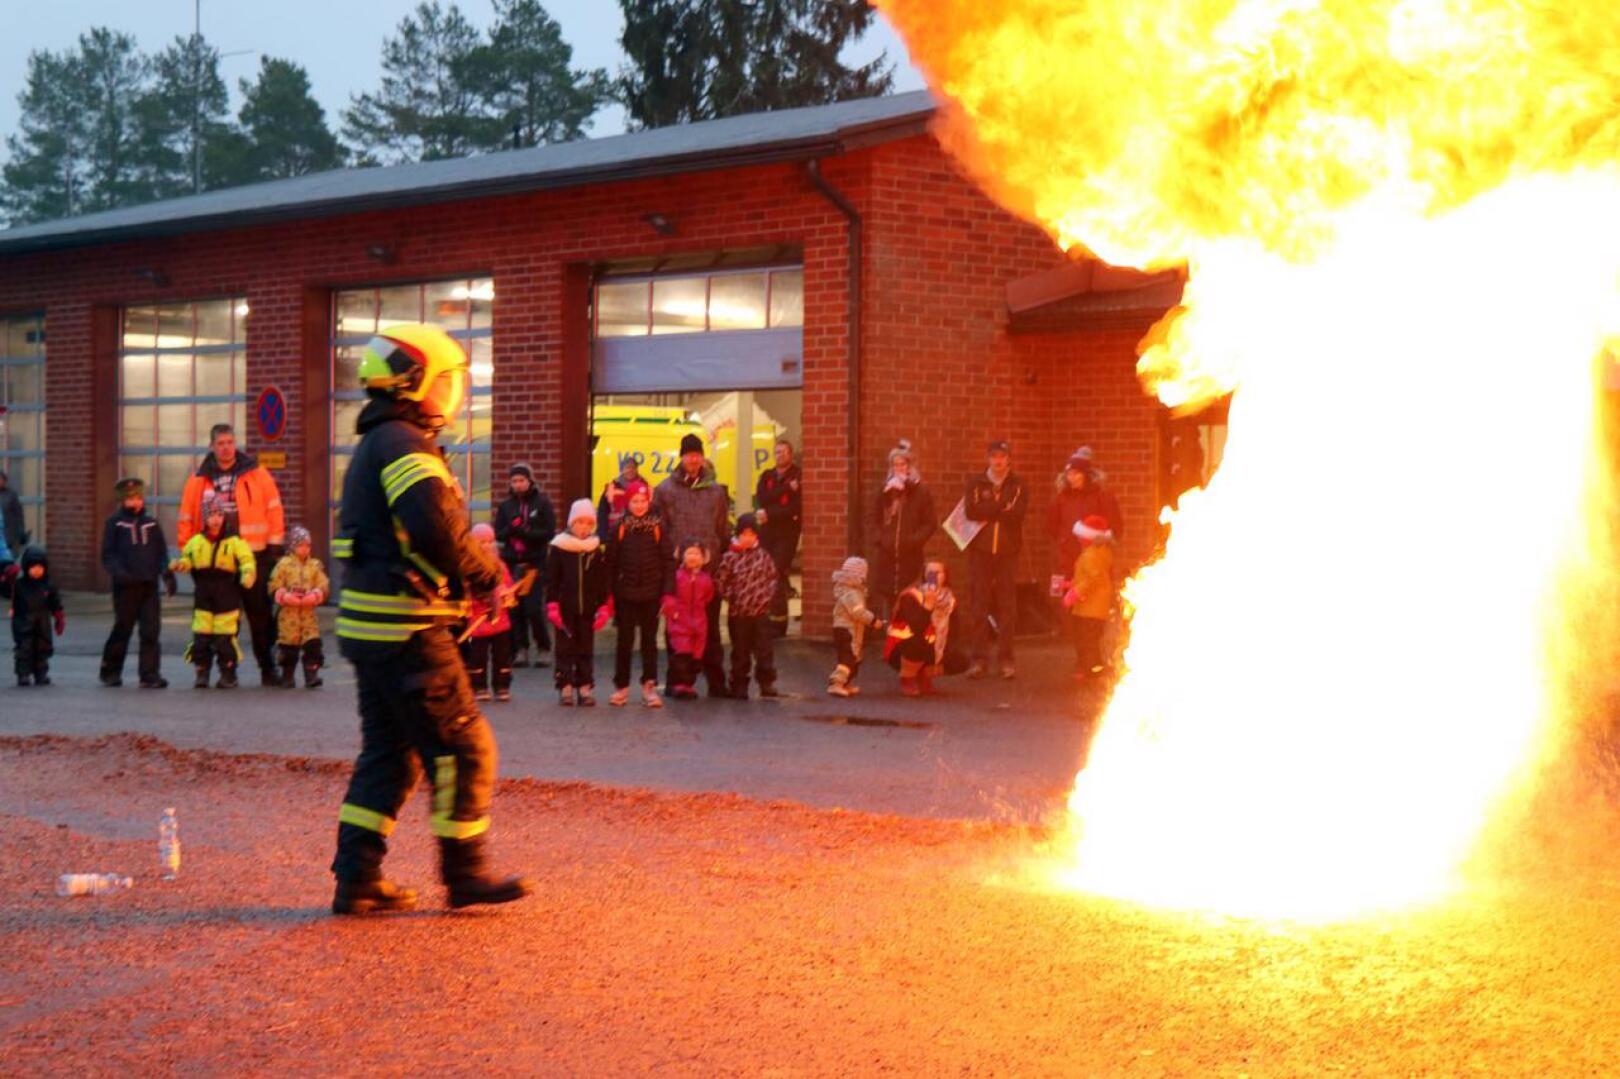 Palokunnan ryhmänjohtaja Pasi Hautala näytti, millainen vaaratilanne syntyy, kun rasvapalon yrittää sammuttaa vedellä. Oikea sammutustapa on tukahduttaminen.